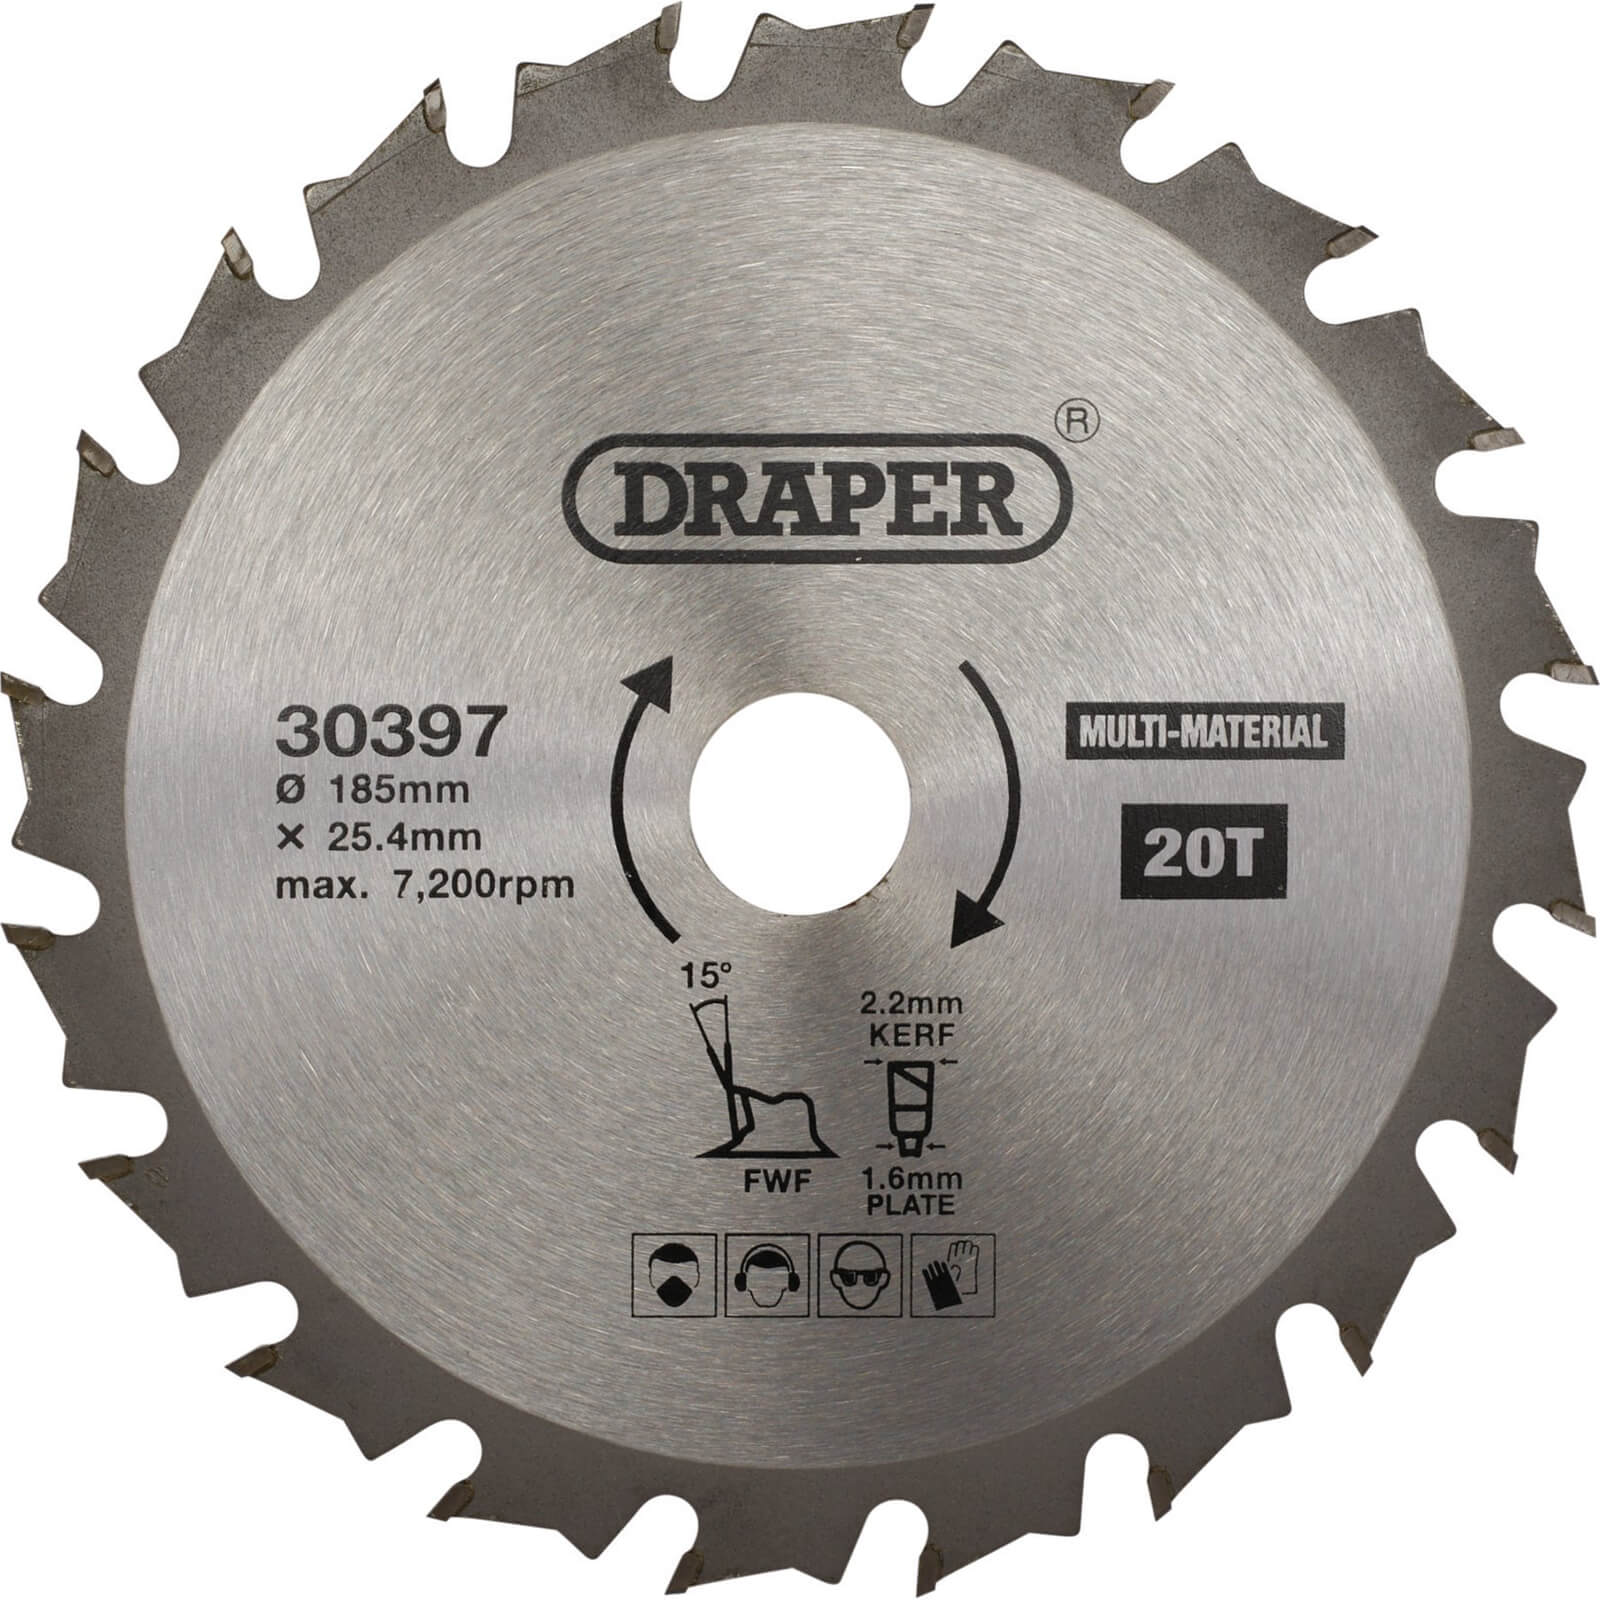 Image of Draper TCT Multi Purpose Circular Saw Blade 185mm 20T 25.4mm